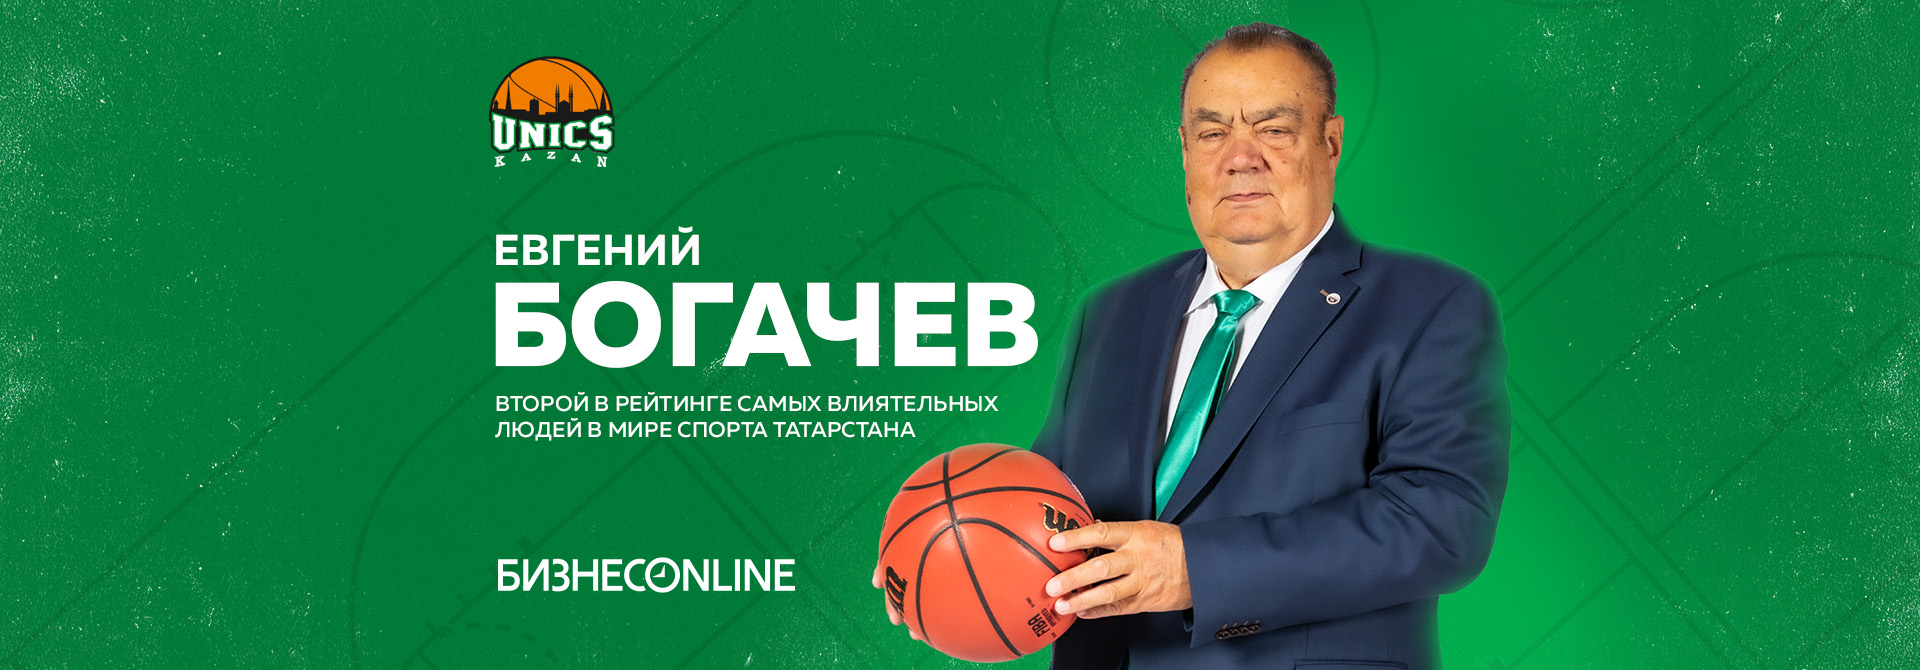 Евгений Богачев – среди самых влиятельных людей в мире спорта Татарстана!